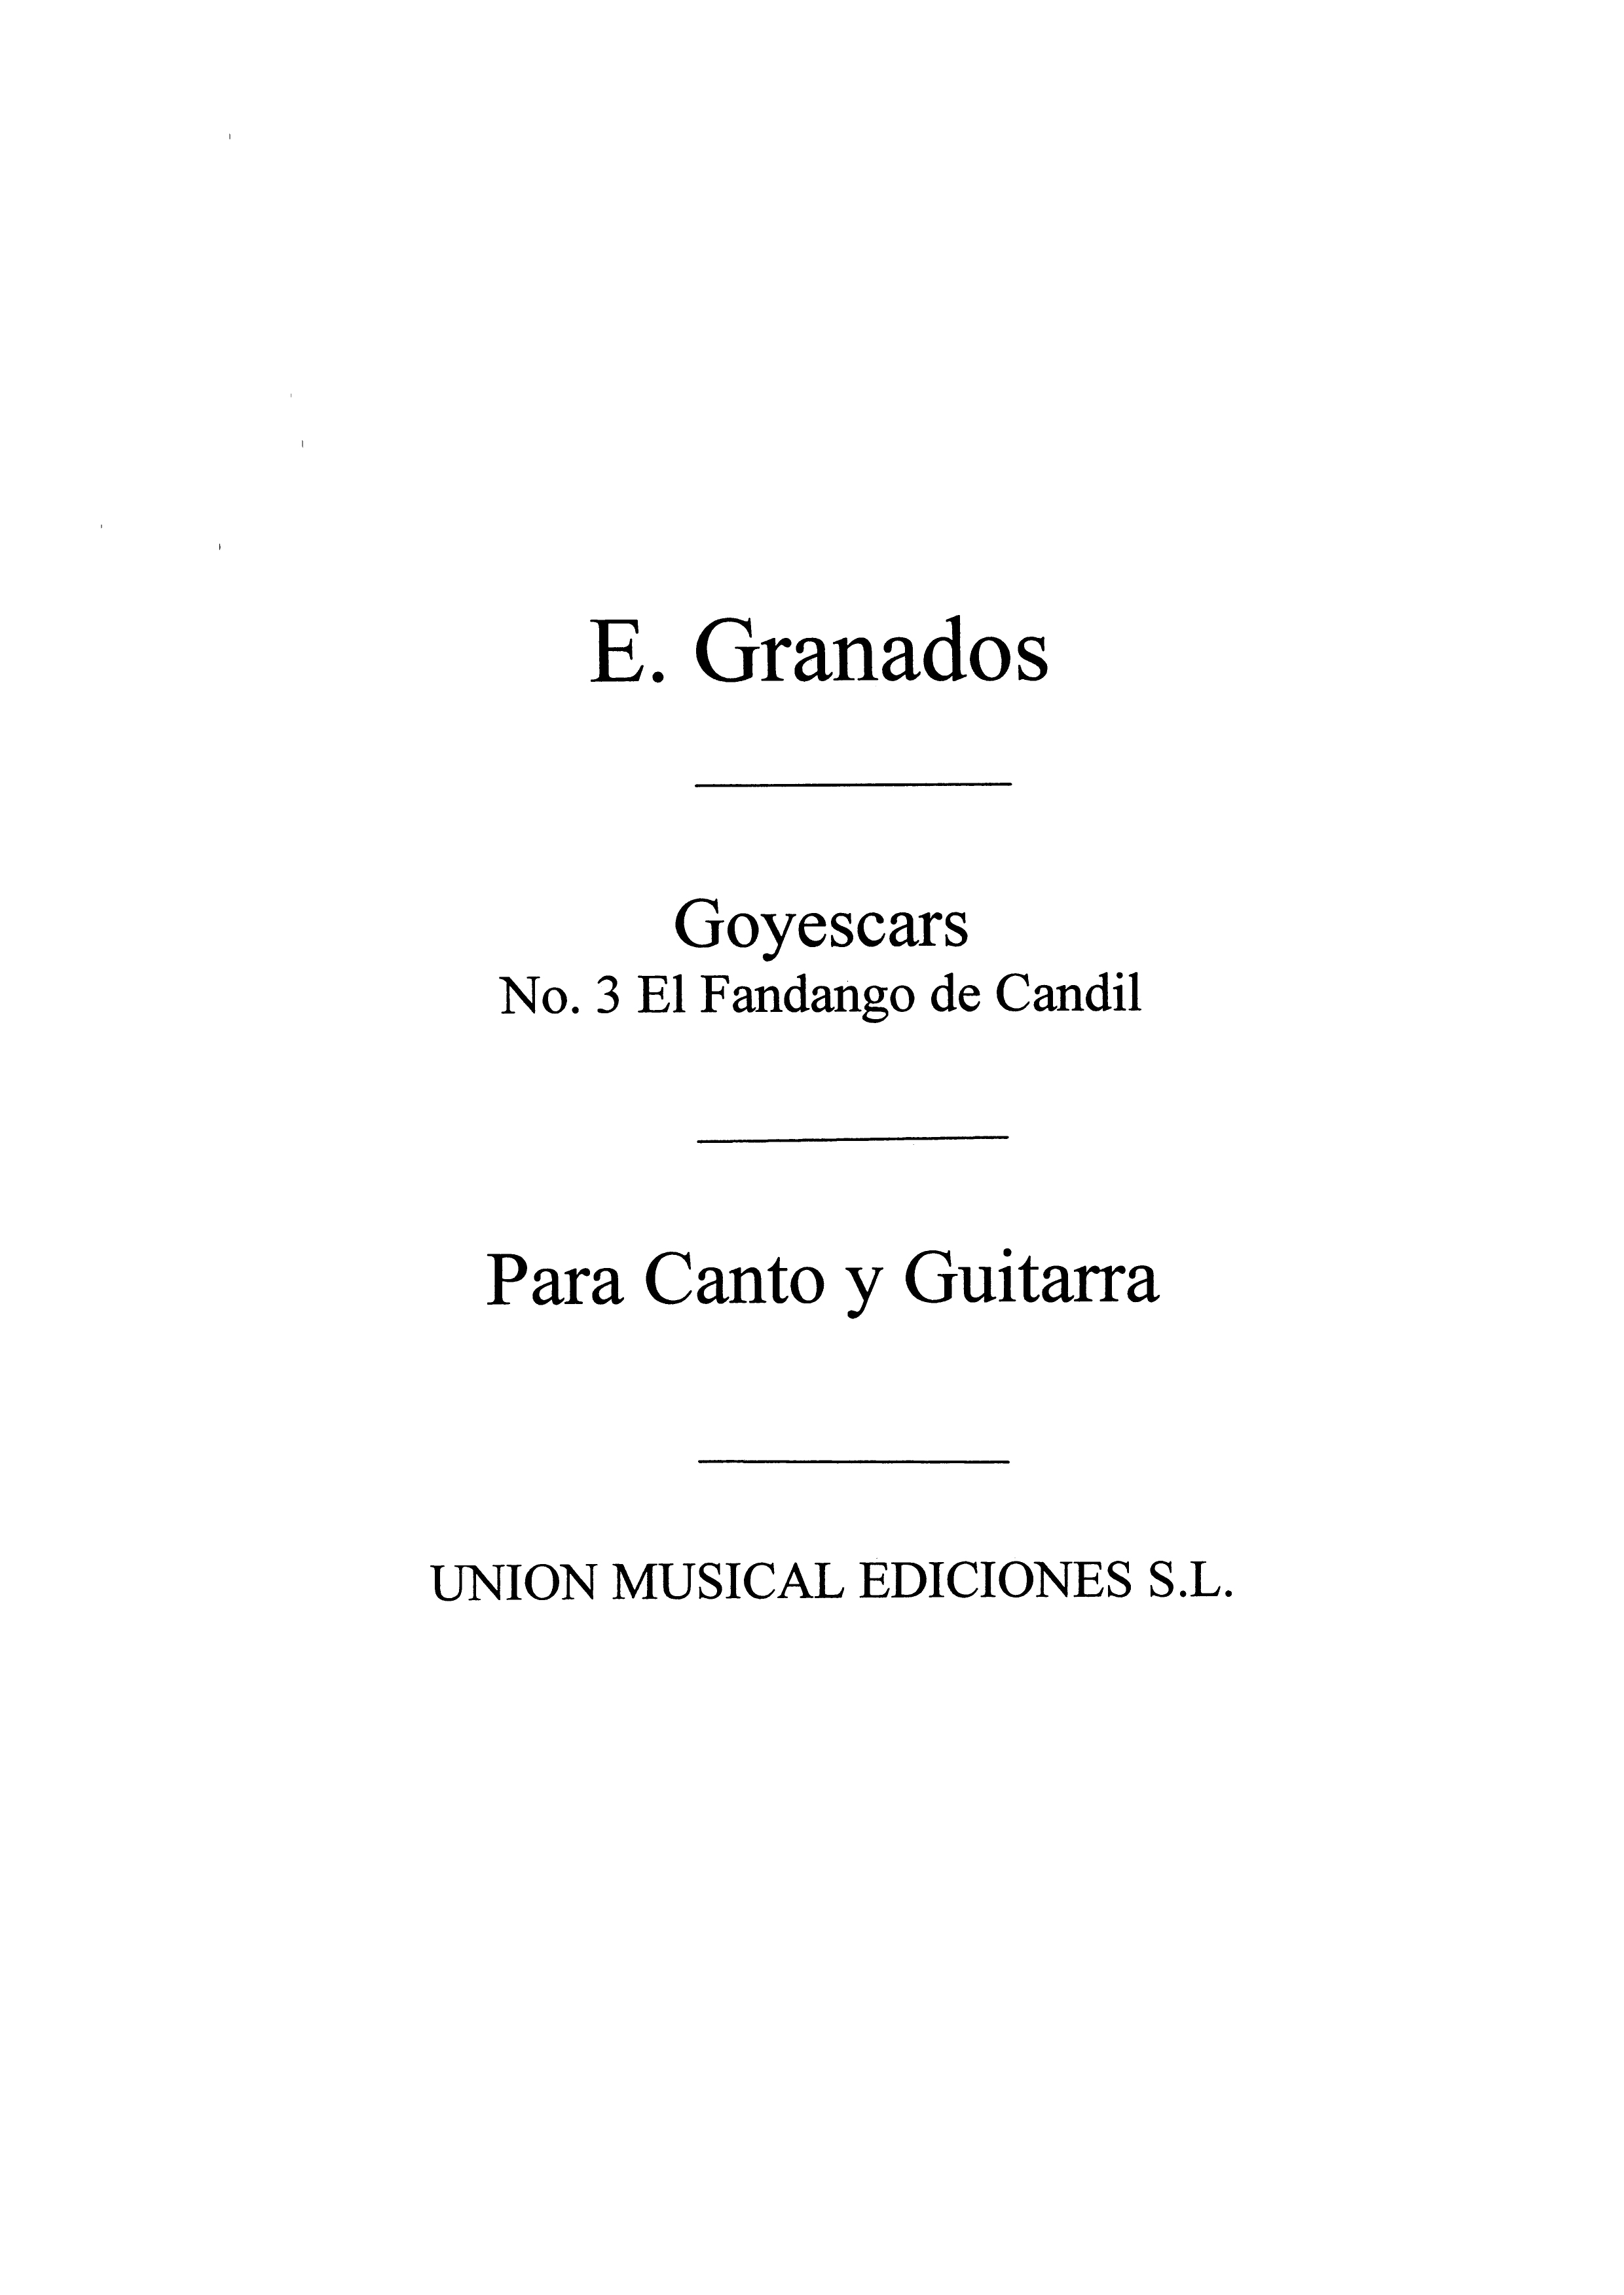 Granados: El Fandango Del Candil No.3 From Goyescas for Piano